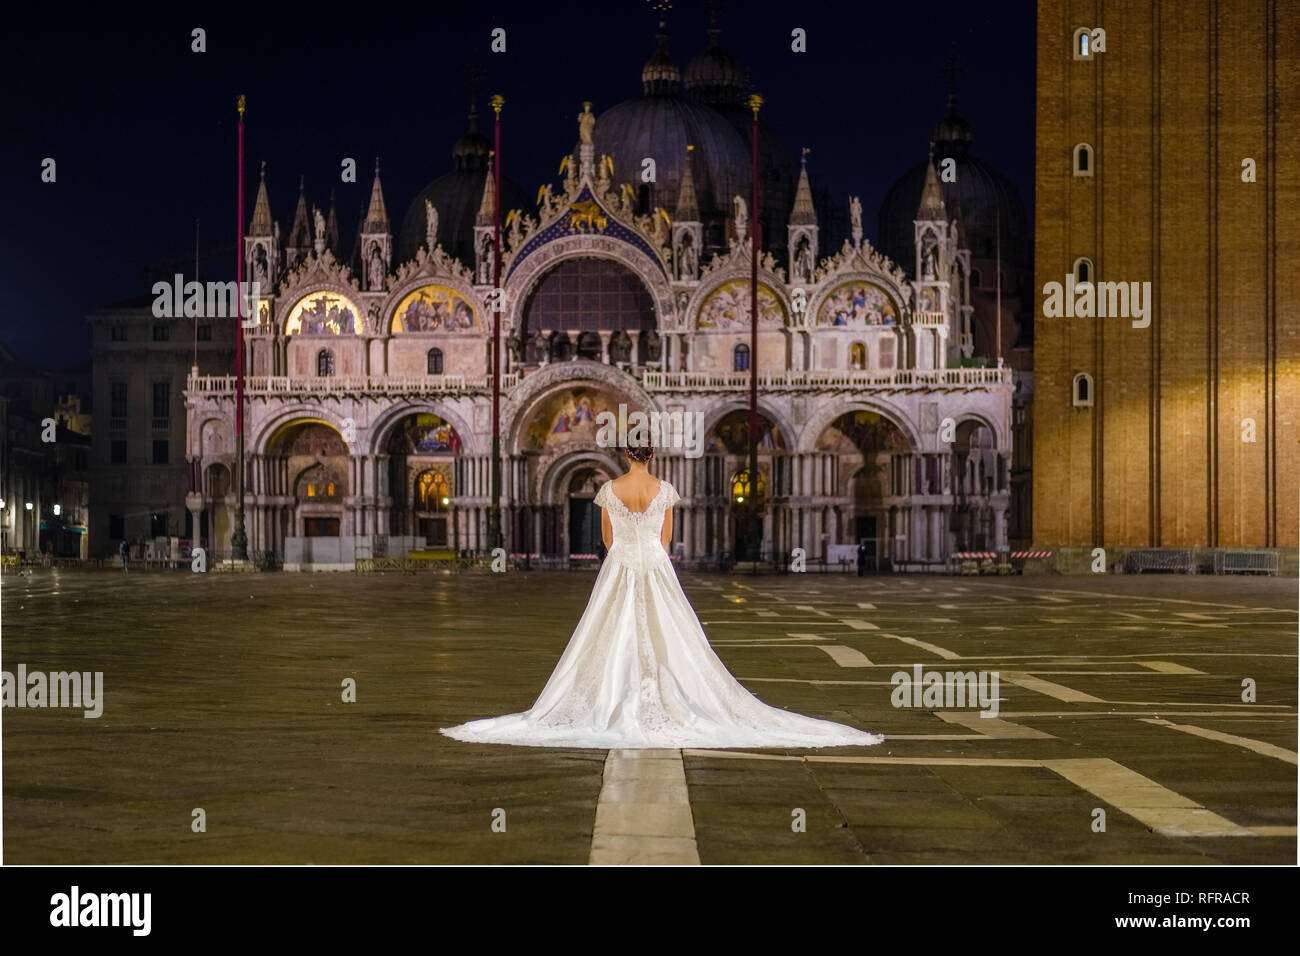 La promise dans une robe de mariage est debout sur la Place San Marco,  Piazza San Marco, dans la nuit Photo Stock - Alamy